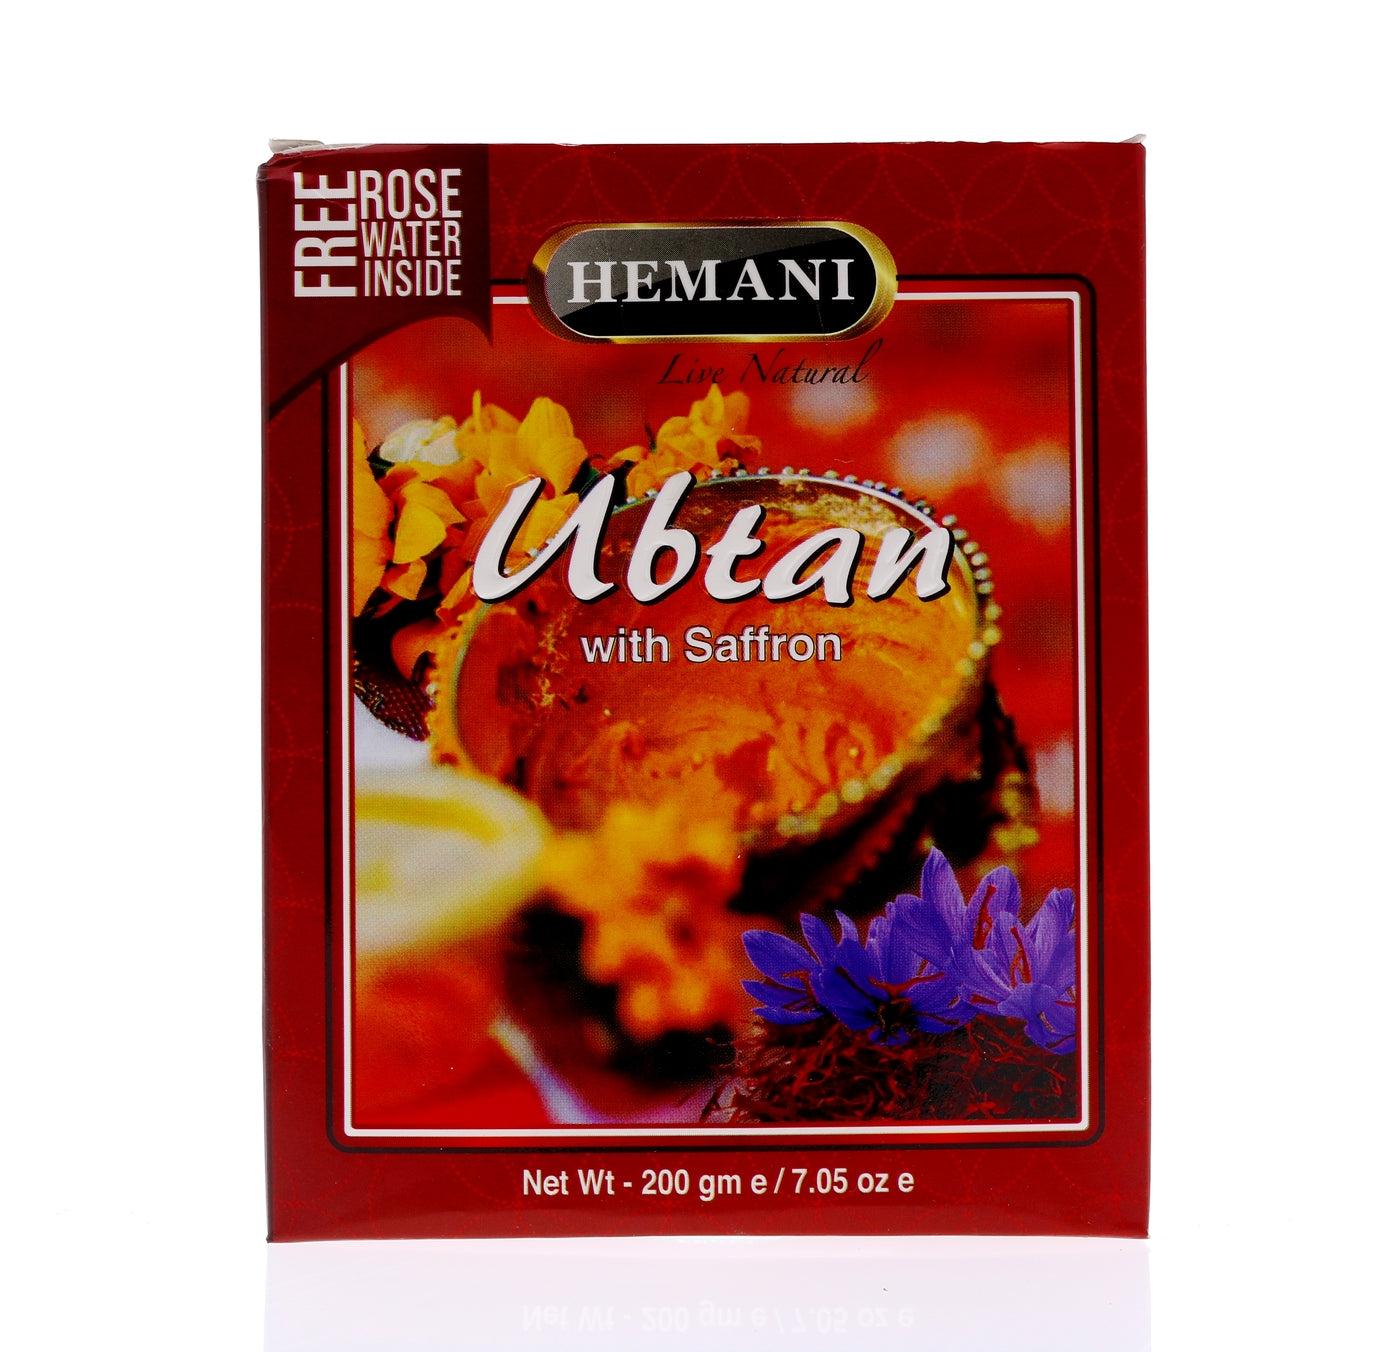 HEMANI Ubtan with Saffron 200g